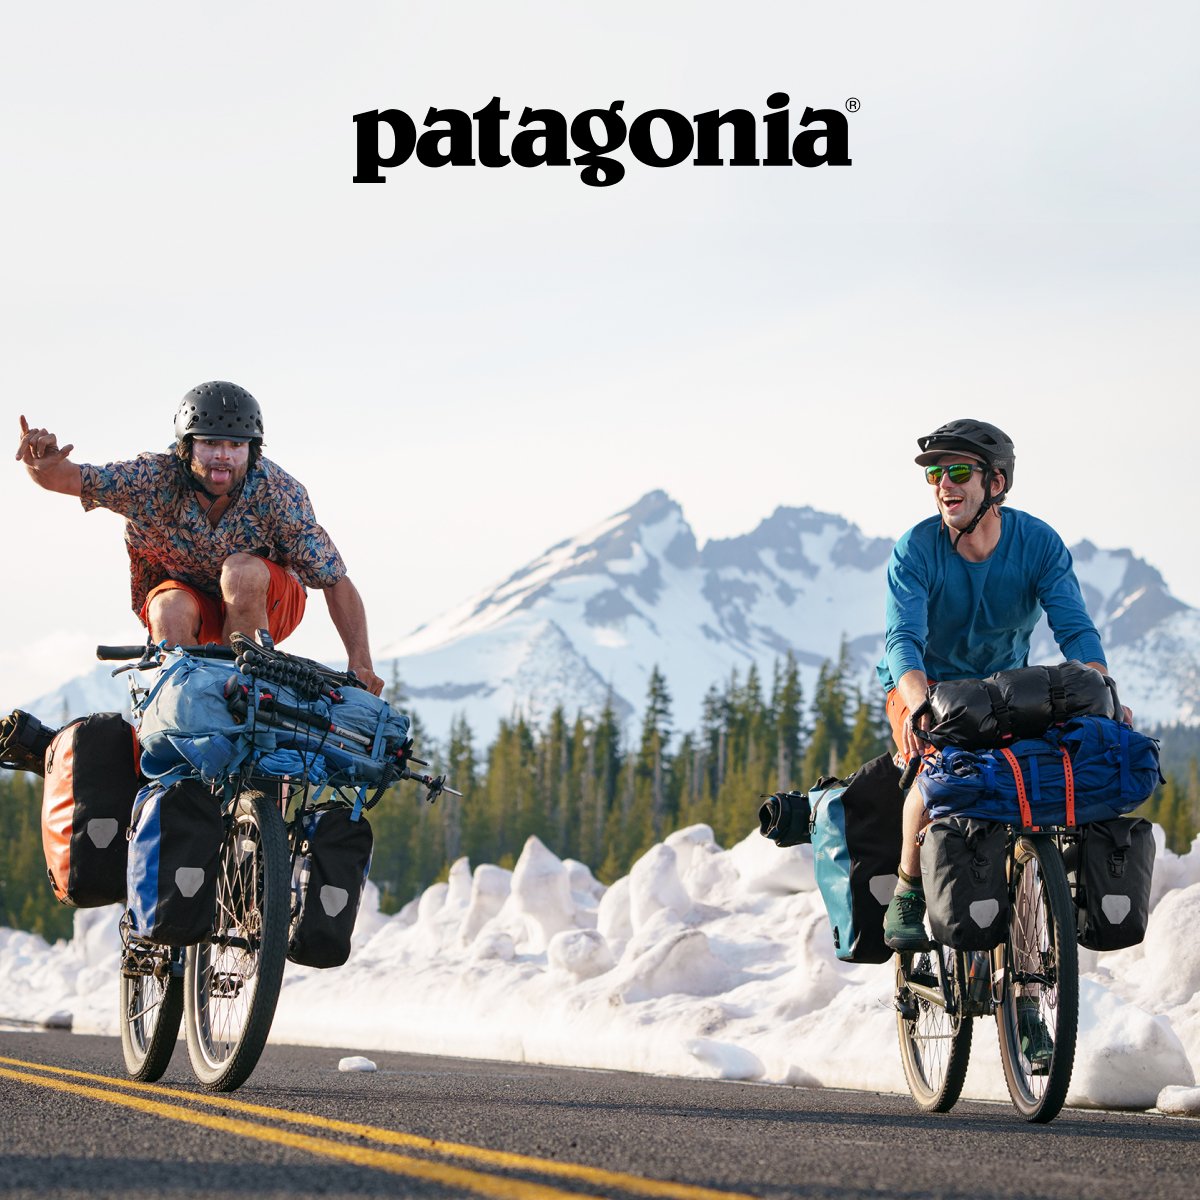 Two people riding bikes through the snow mountains.